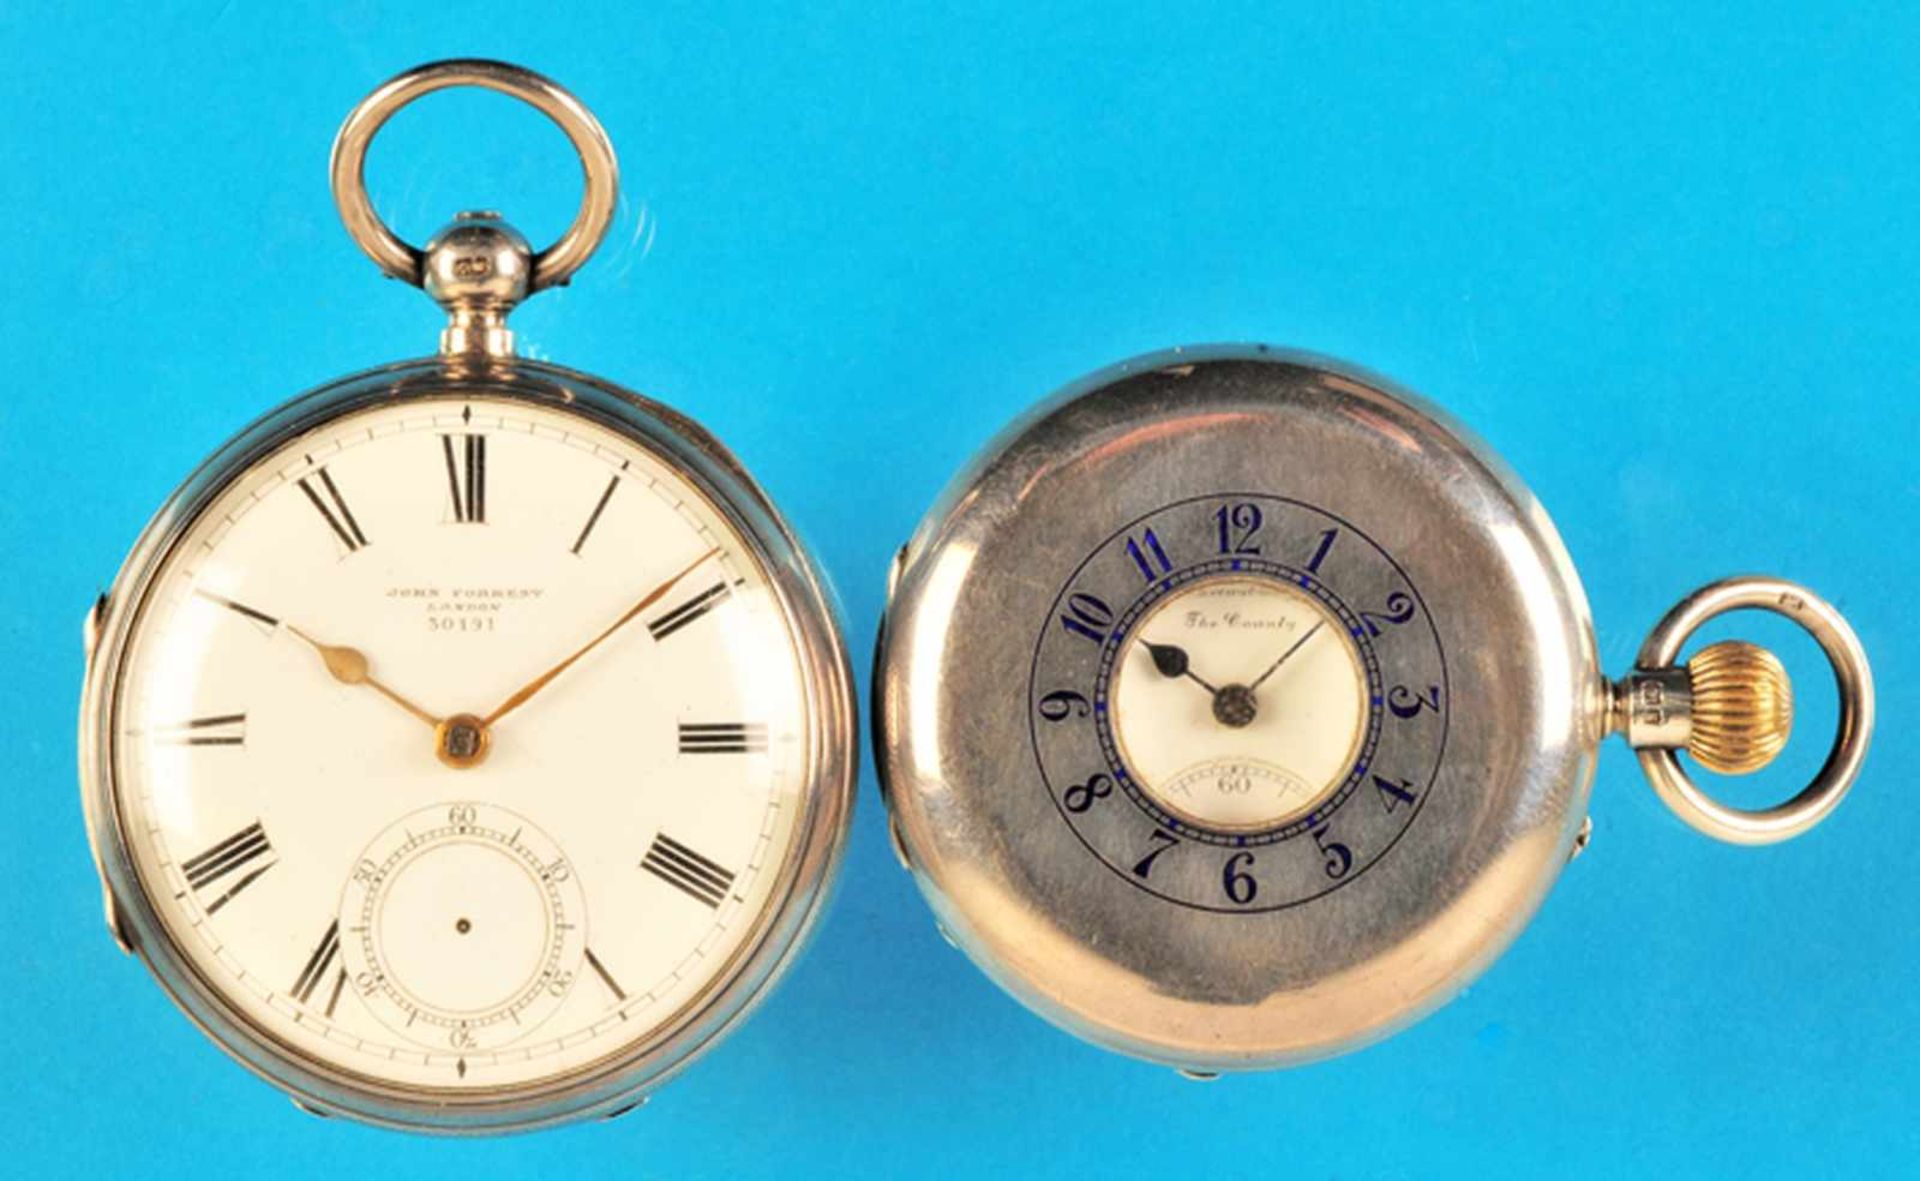 Bundle with 2 english silver pocket watchesKonvolut mit 2 englischen Silbertaschenuhren, John